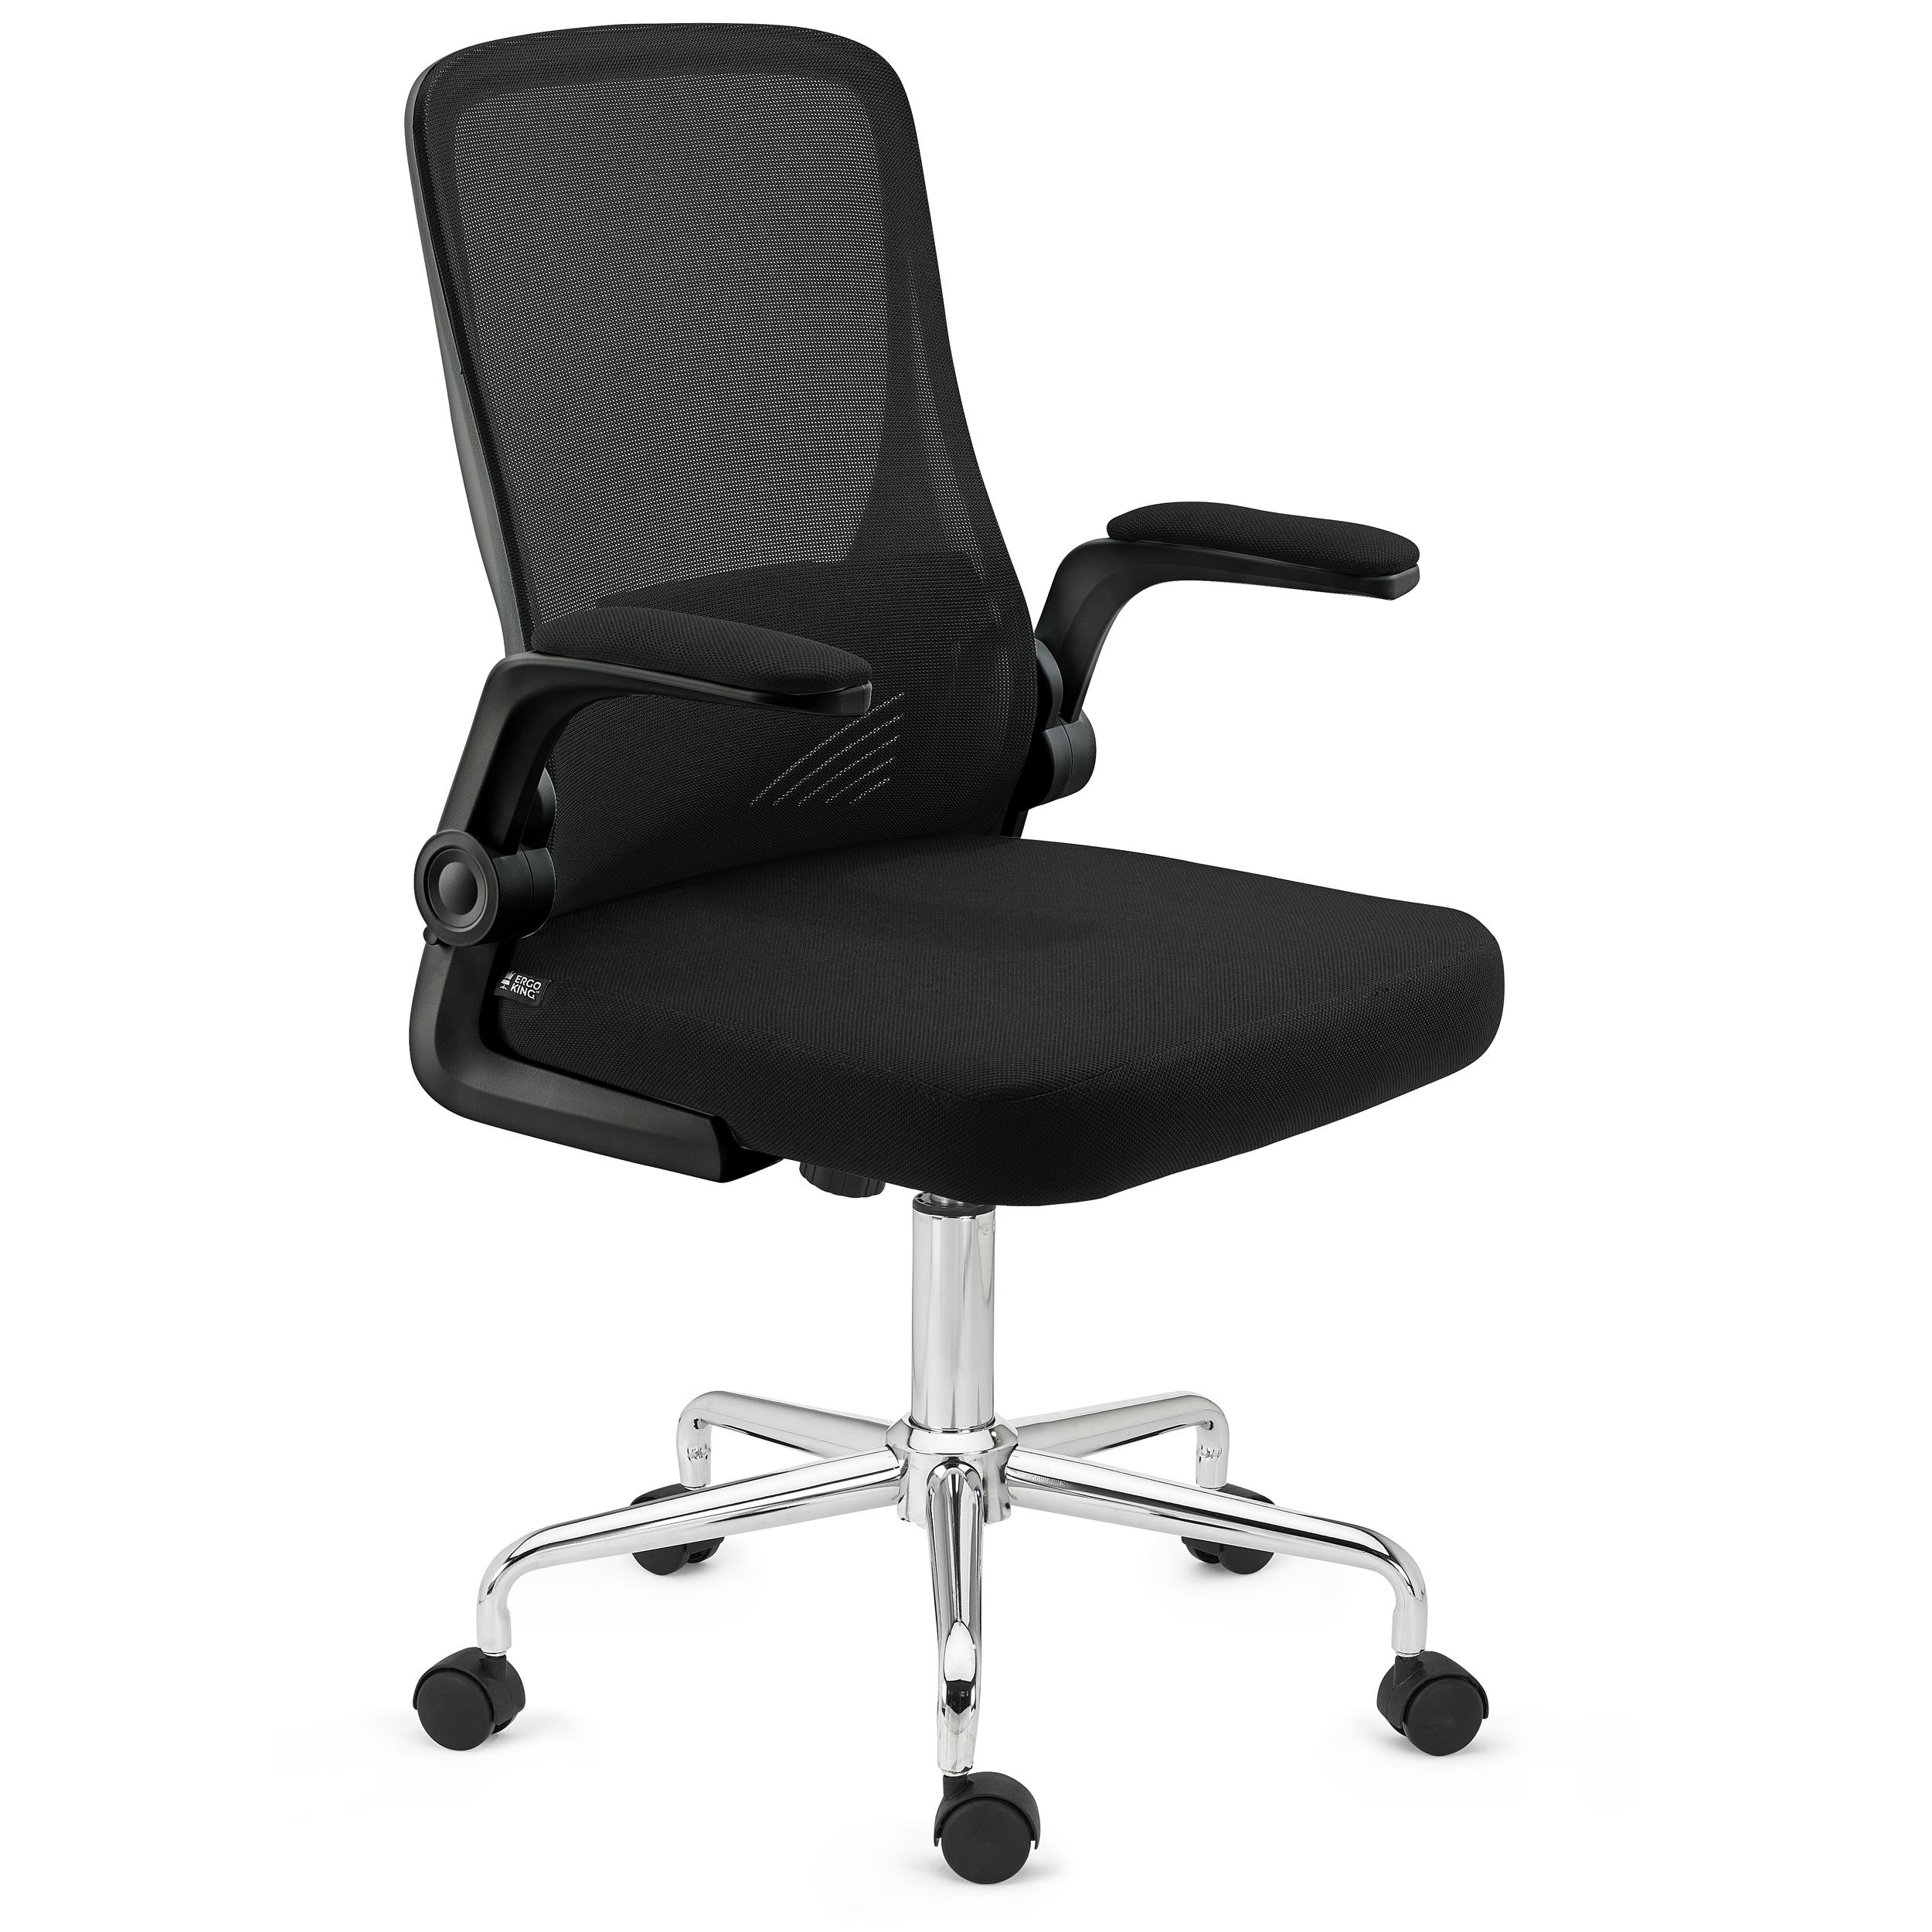 Professionele kantoorstoel FOLD, Kantelbare Rugleuning en Opklapbare Armleuningen,Comfortabel en Functioneel, Zwart